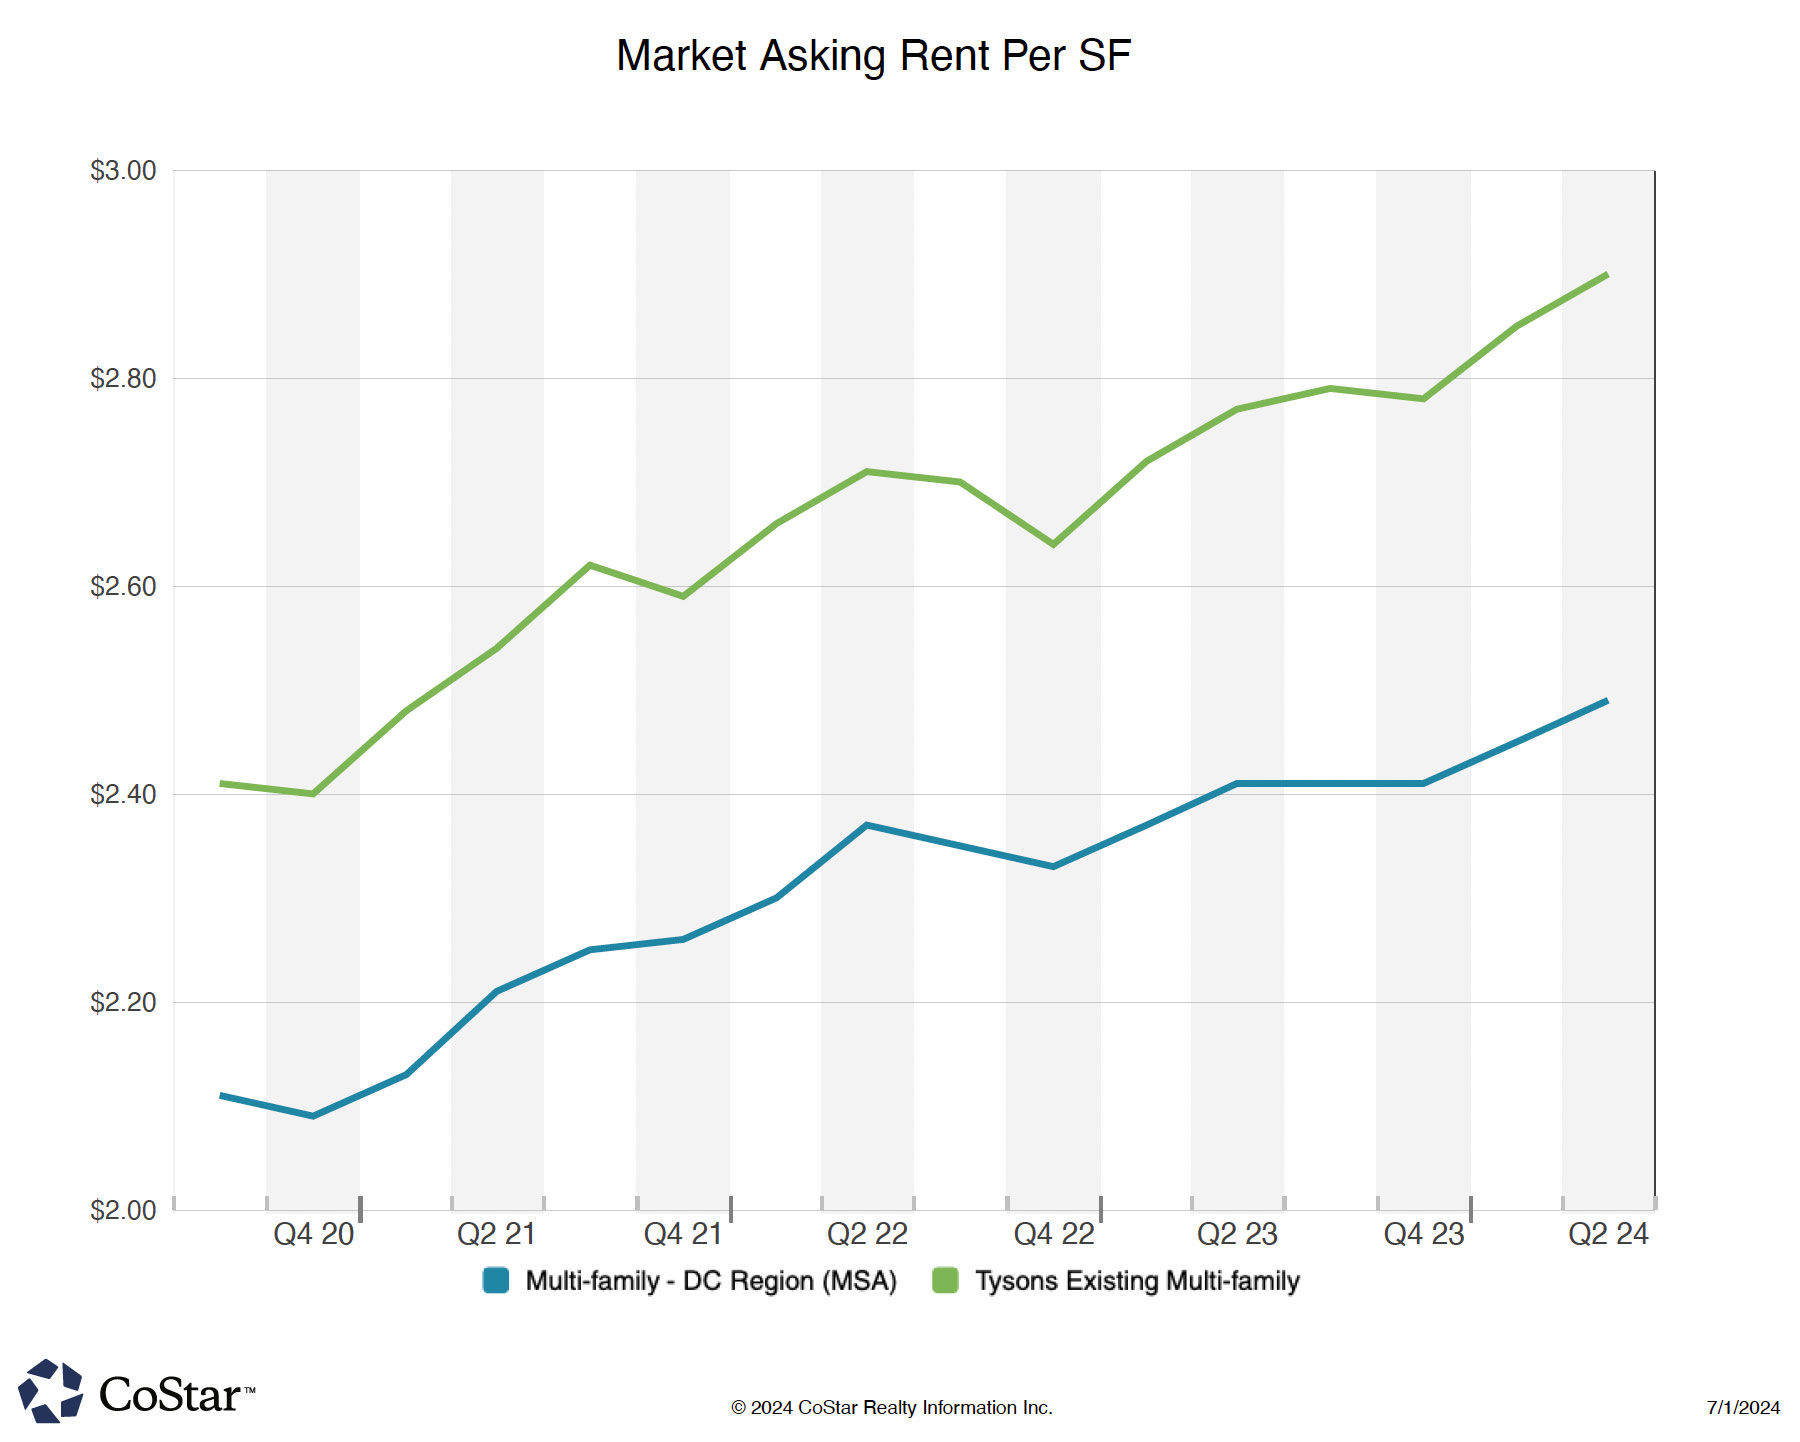 Average Rent Per SF